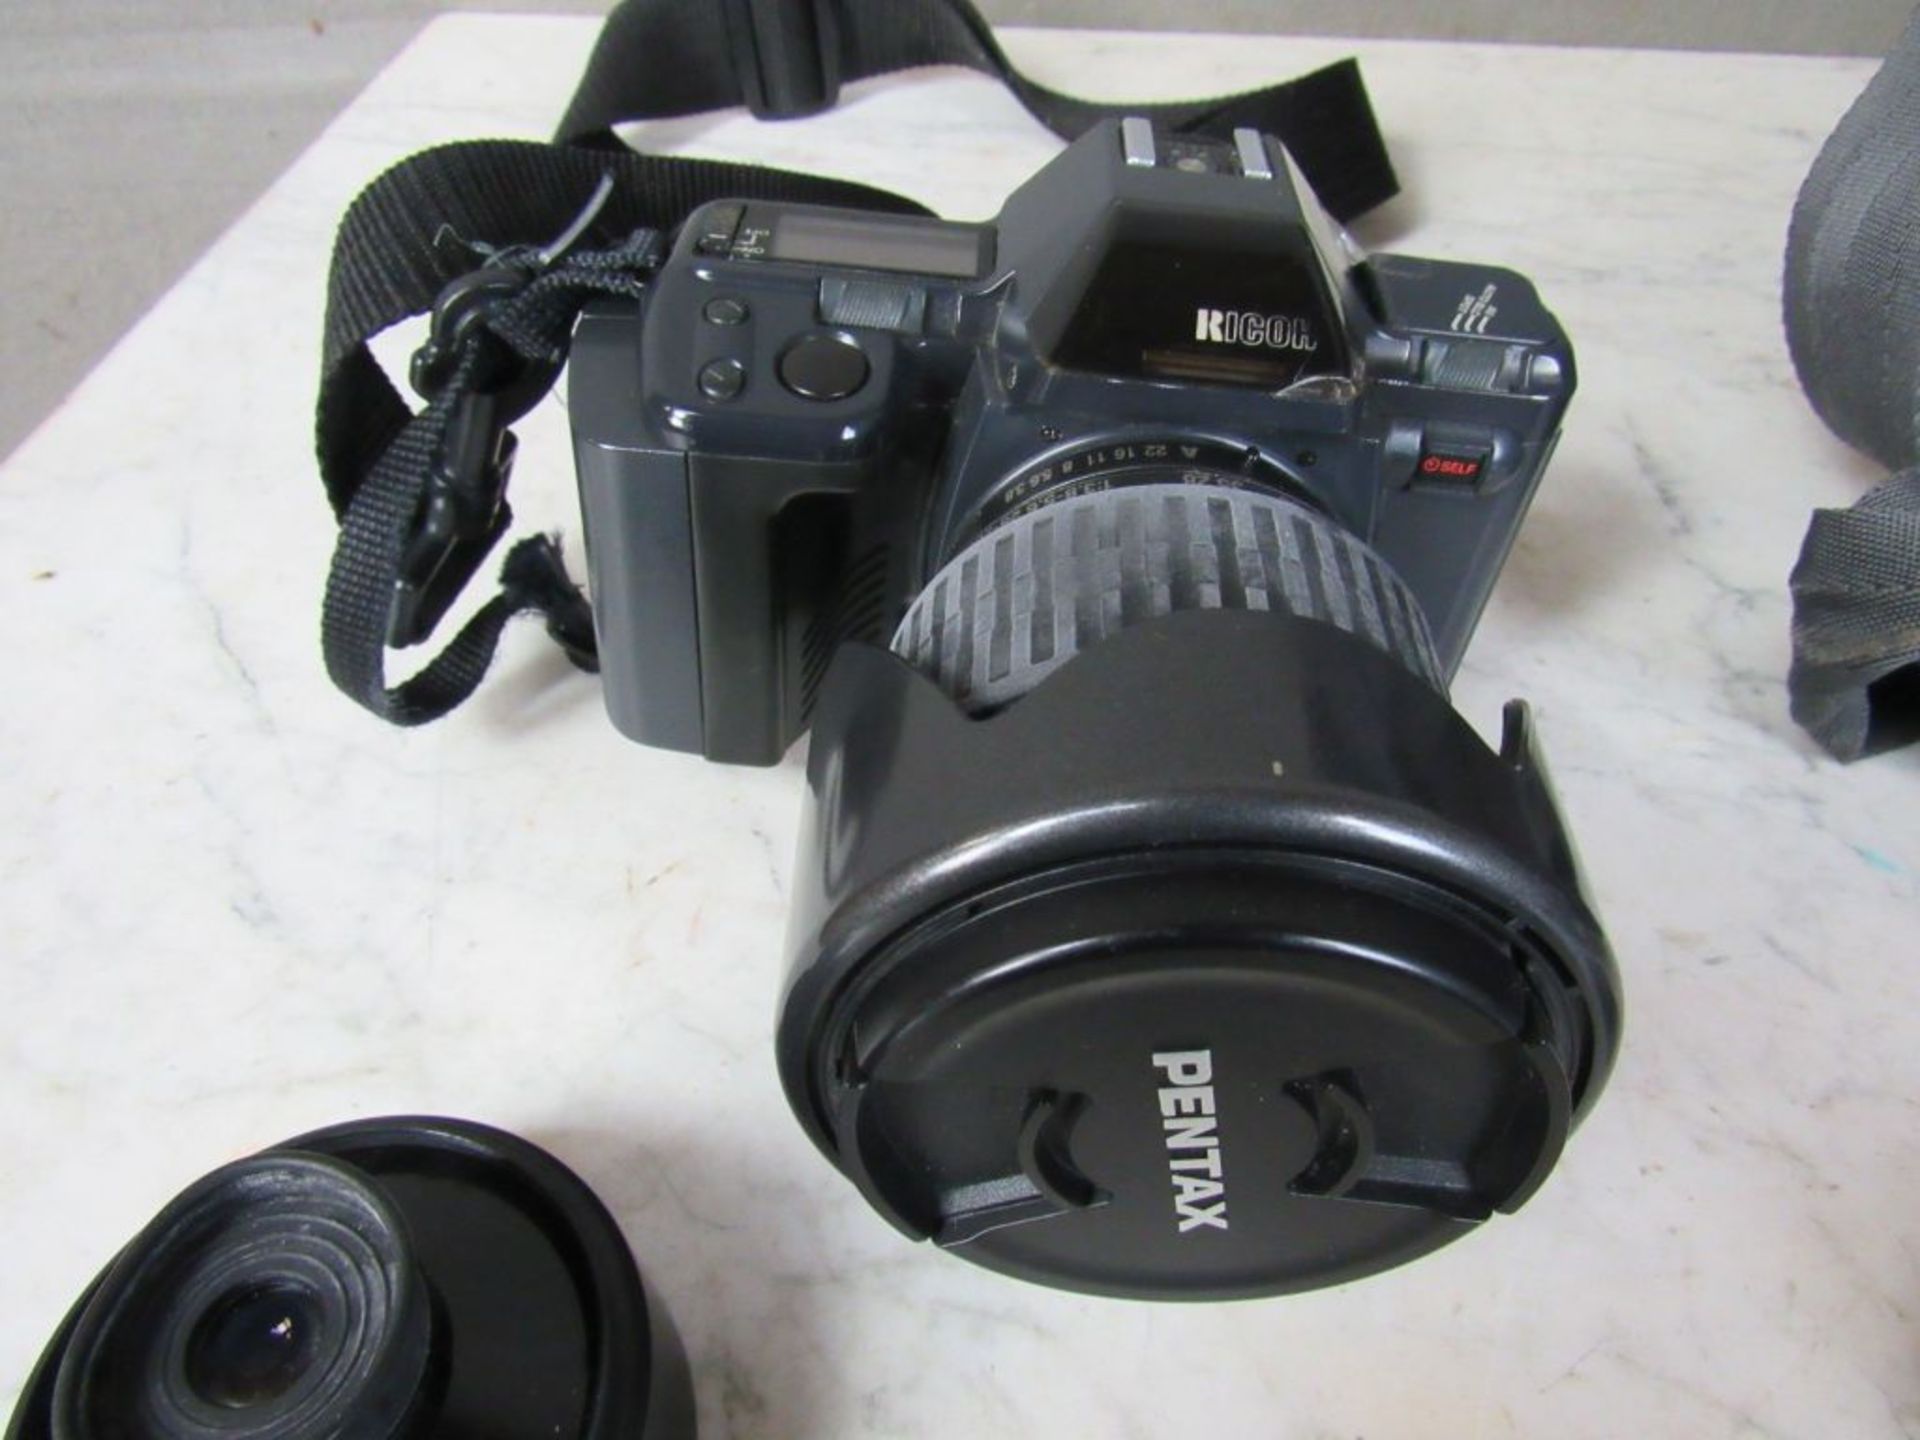 Kamera Ricoh mit ZubehÃ¶r in Tasche und - Image 3 of 10